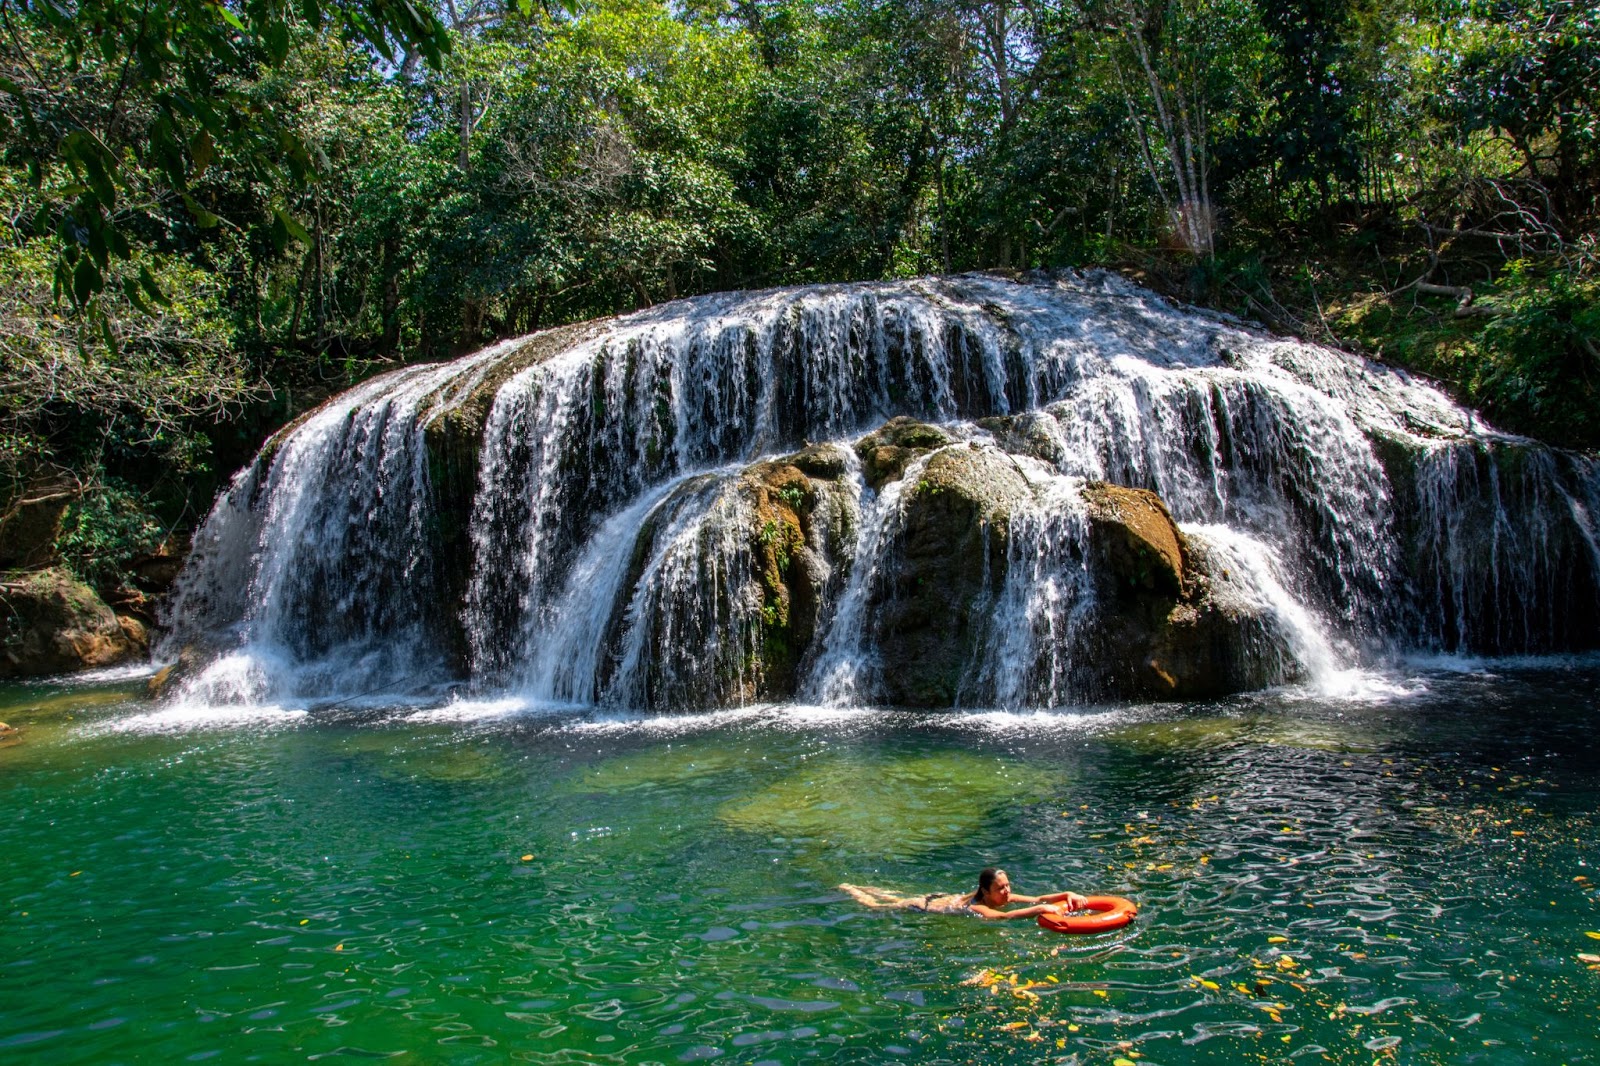 Turista nadando em uma cachoeira de Bonito, MS. A água desliza por grandes pedras marrons e desce até um poço esverdeado. Ao redor da cascata, aparecem trechos de floresta verde e densa